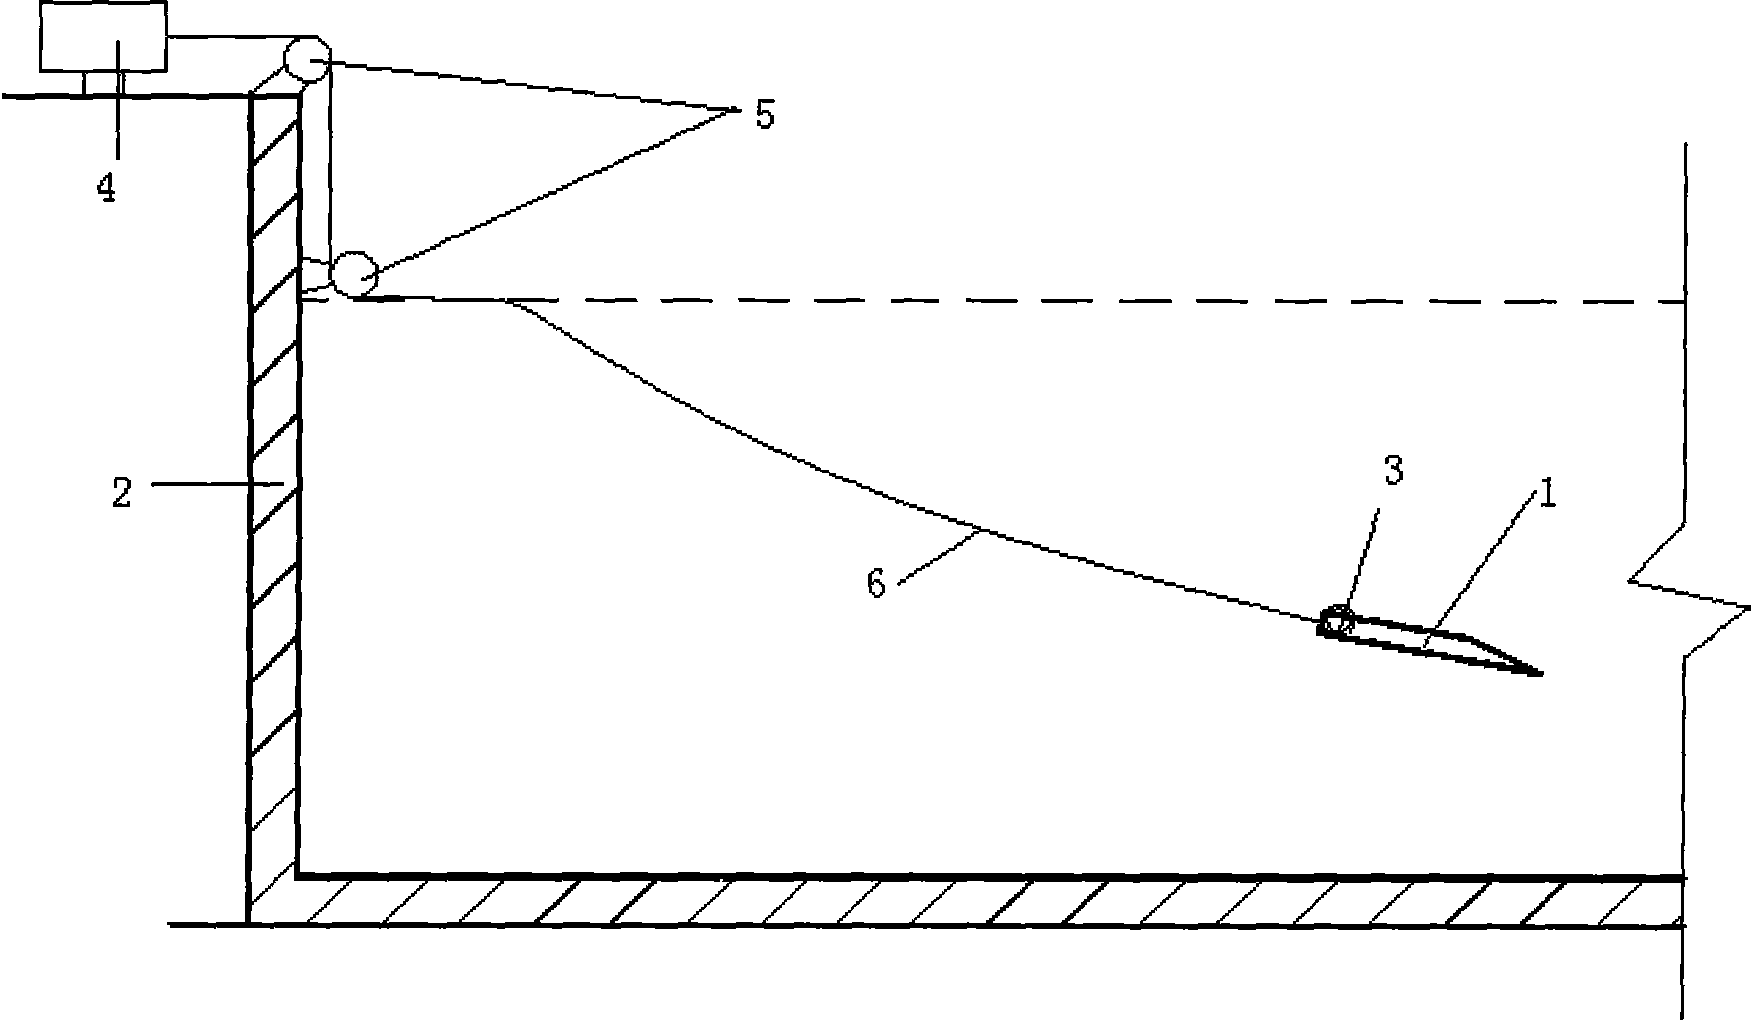 Method for detecting motion direction of drag anchor in oceansoil